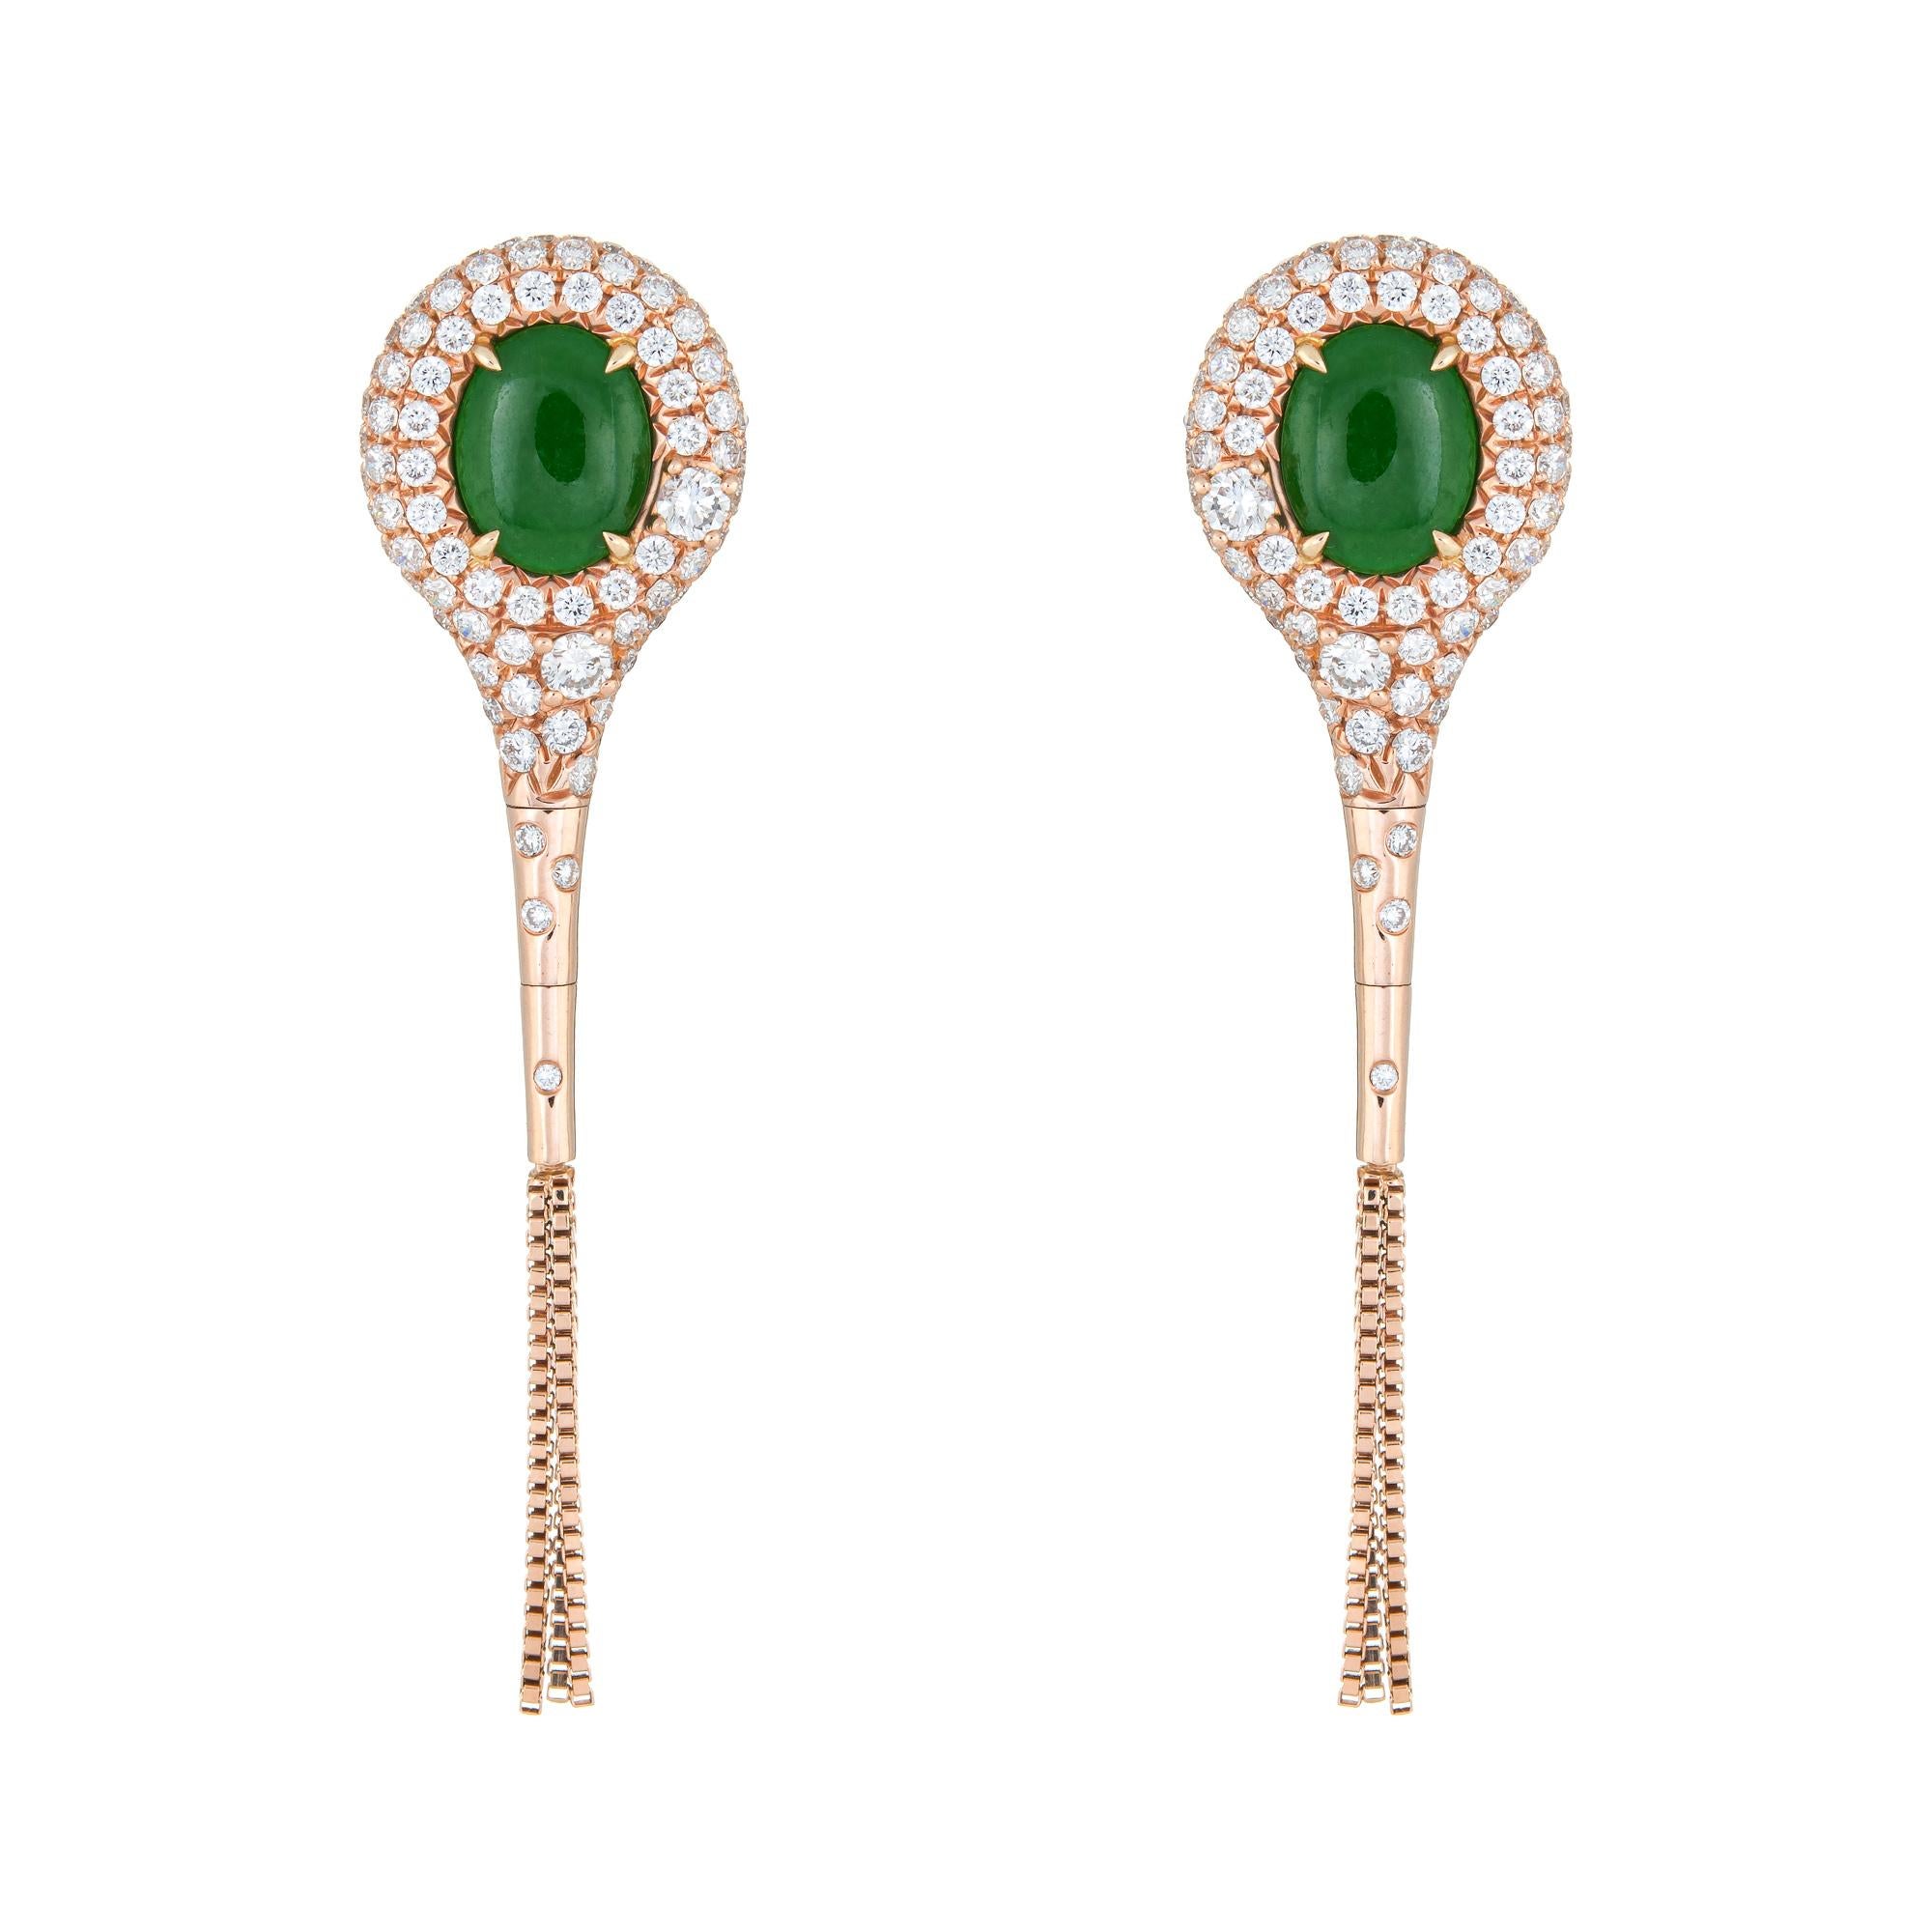 Oval Cut Jade Diamond Earrings 1.36 Carat Estate 18K Gold Oval Drops Fine Jewelry Fringe